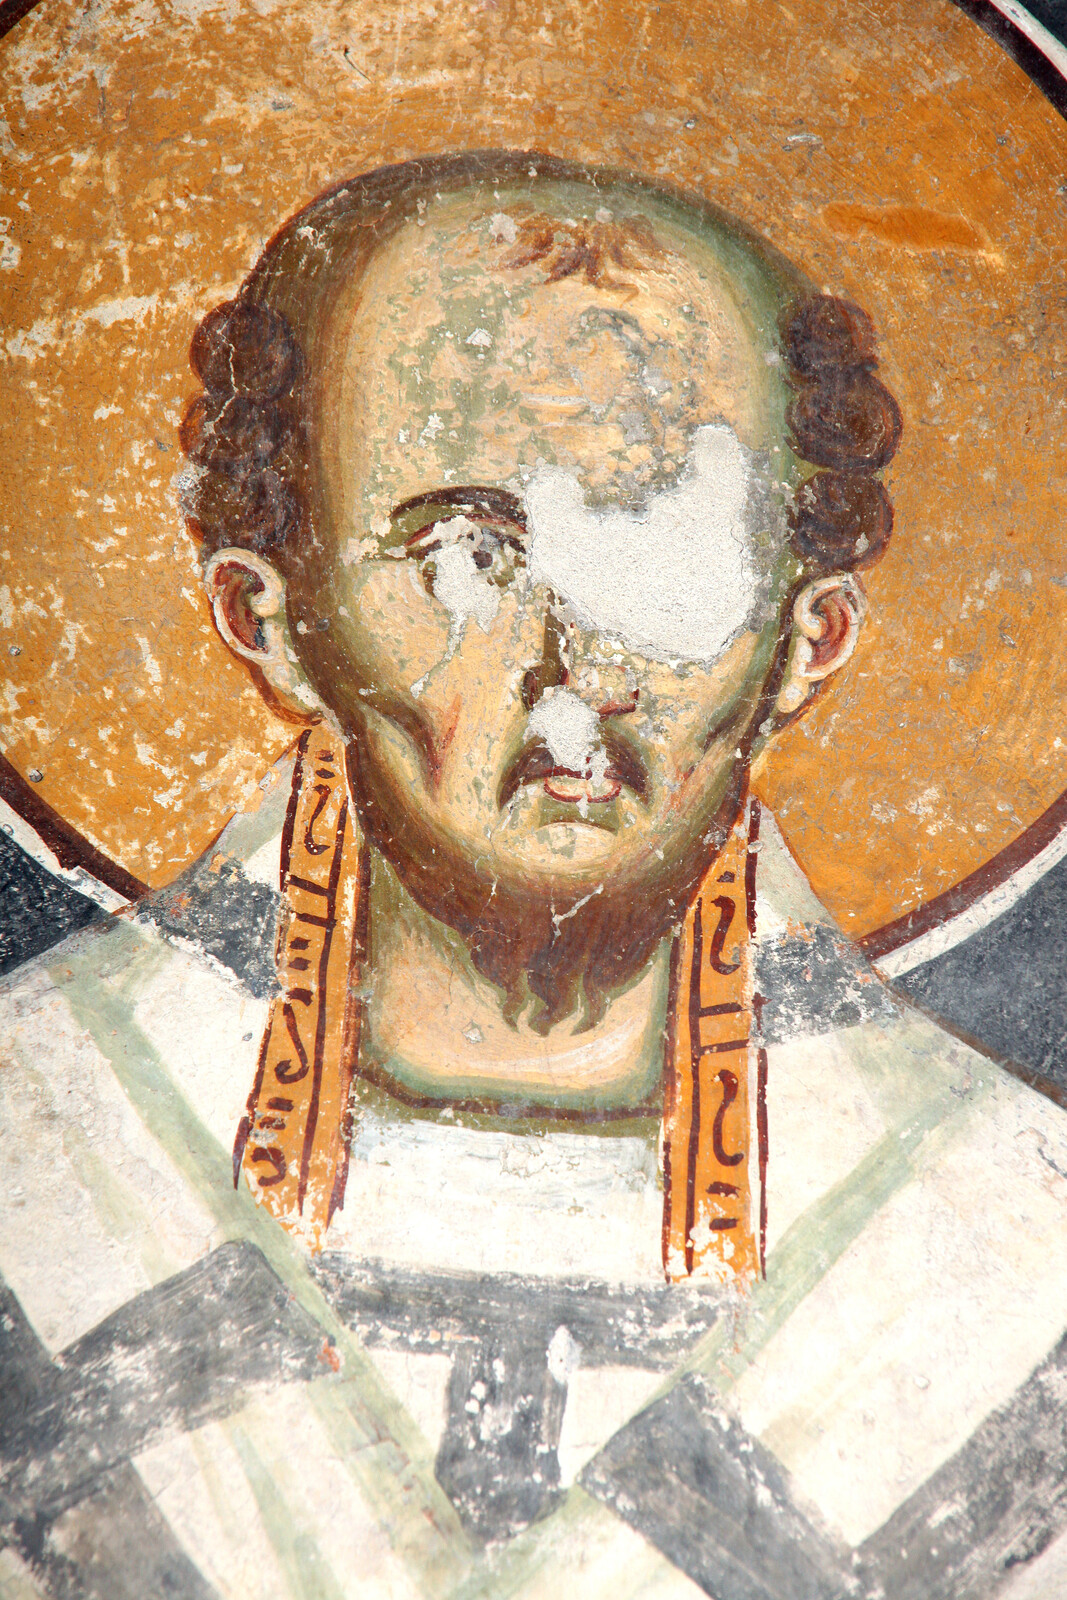 St. John the Chrysostom, detail